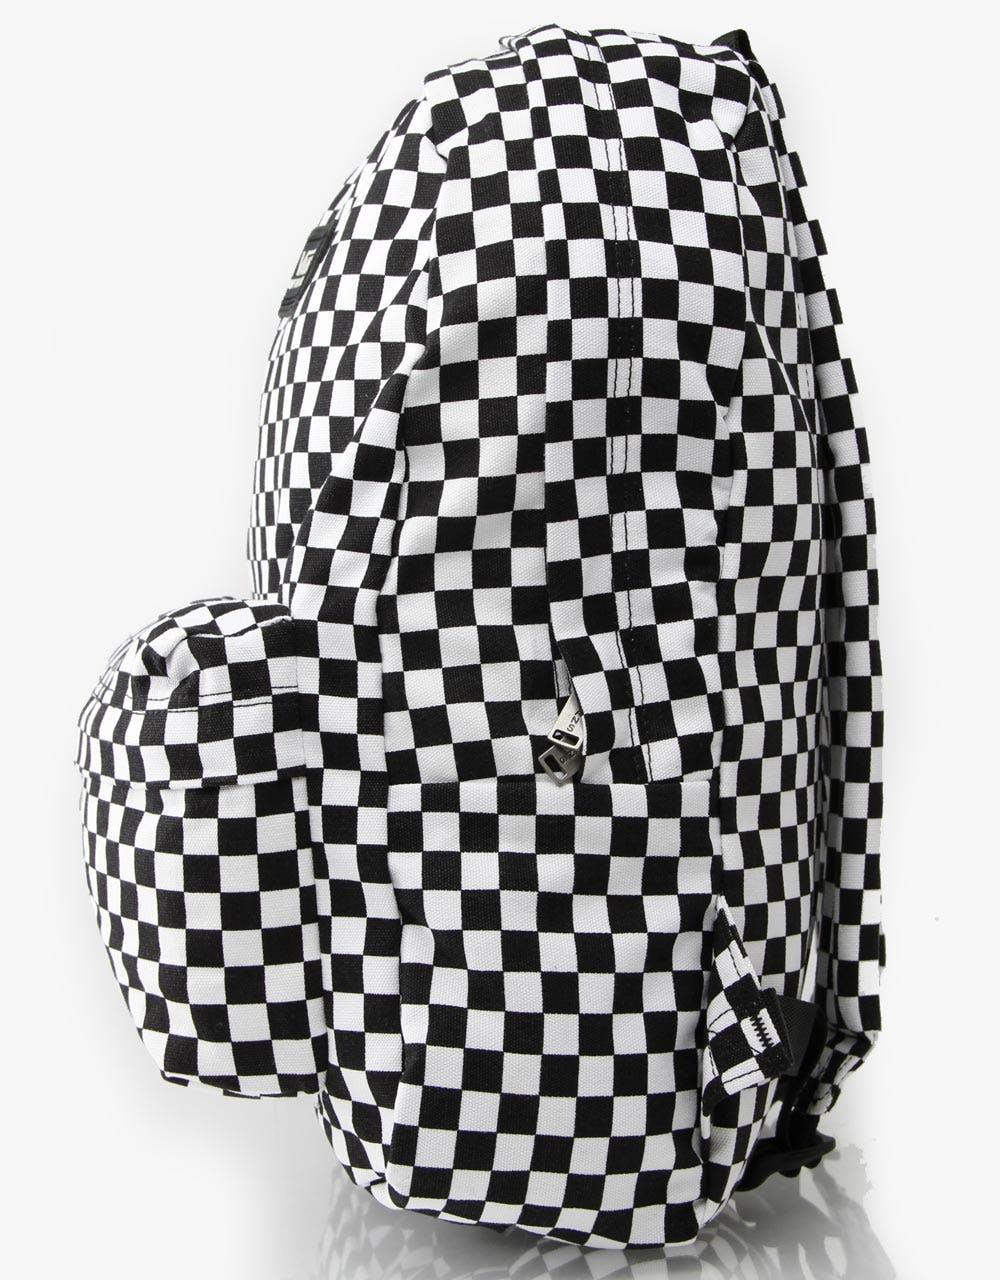 Vans Old Skool II Backpack - Black/White Checkerboard